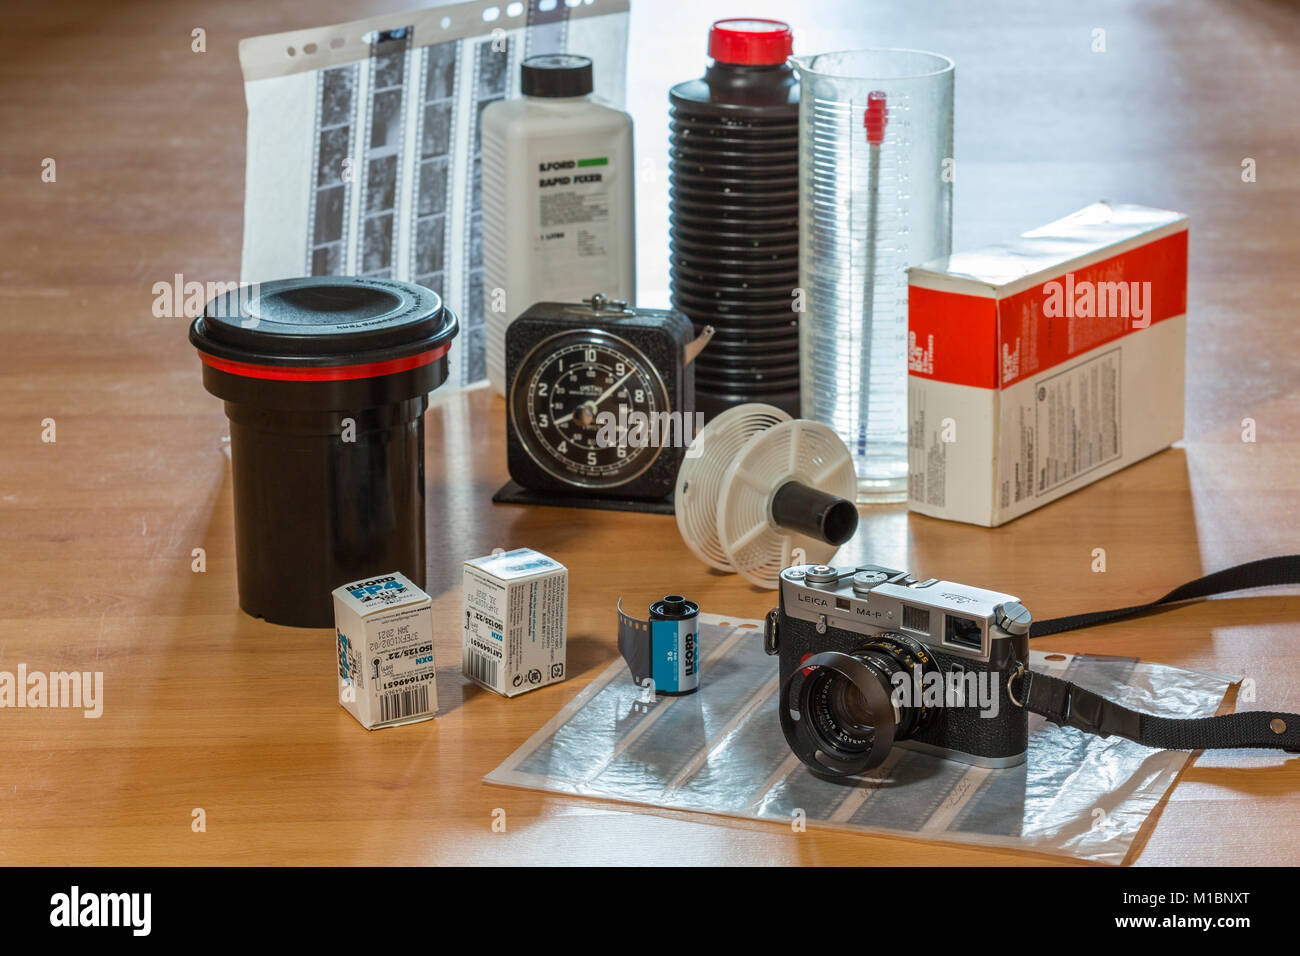 Fotografia analogica. Leica fotocamera a pellicola, pellicole e lo sviluppo di attrezzature. Foto Stock